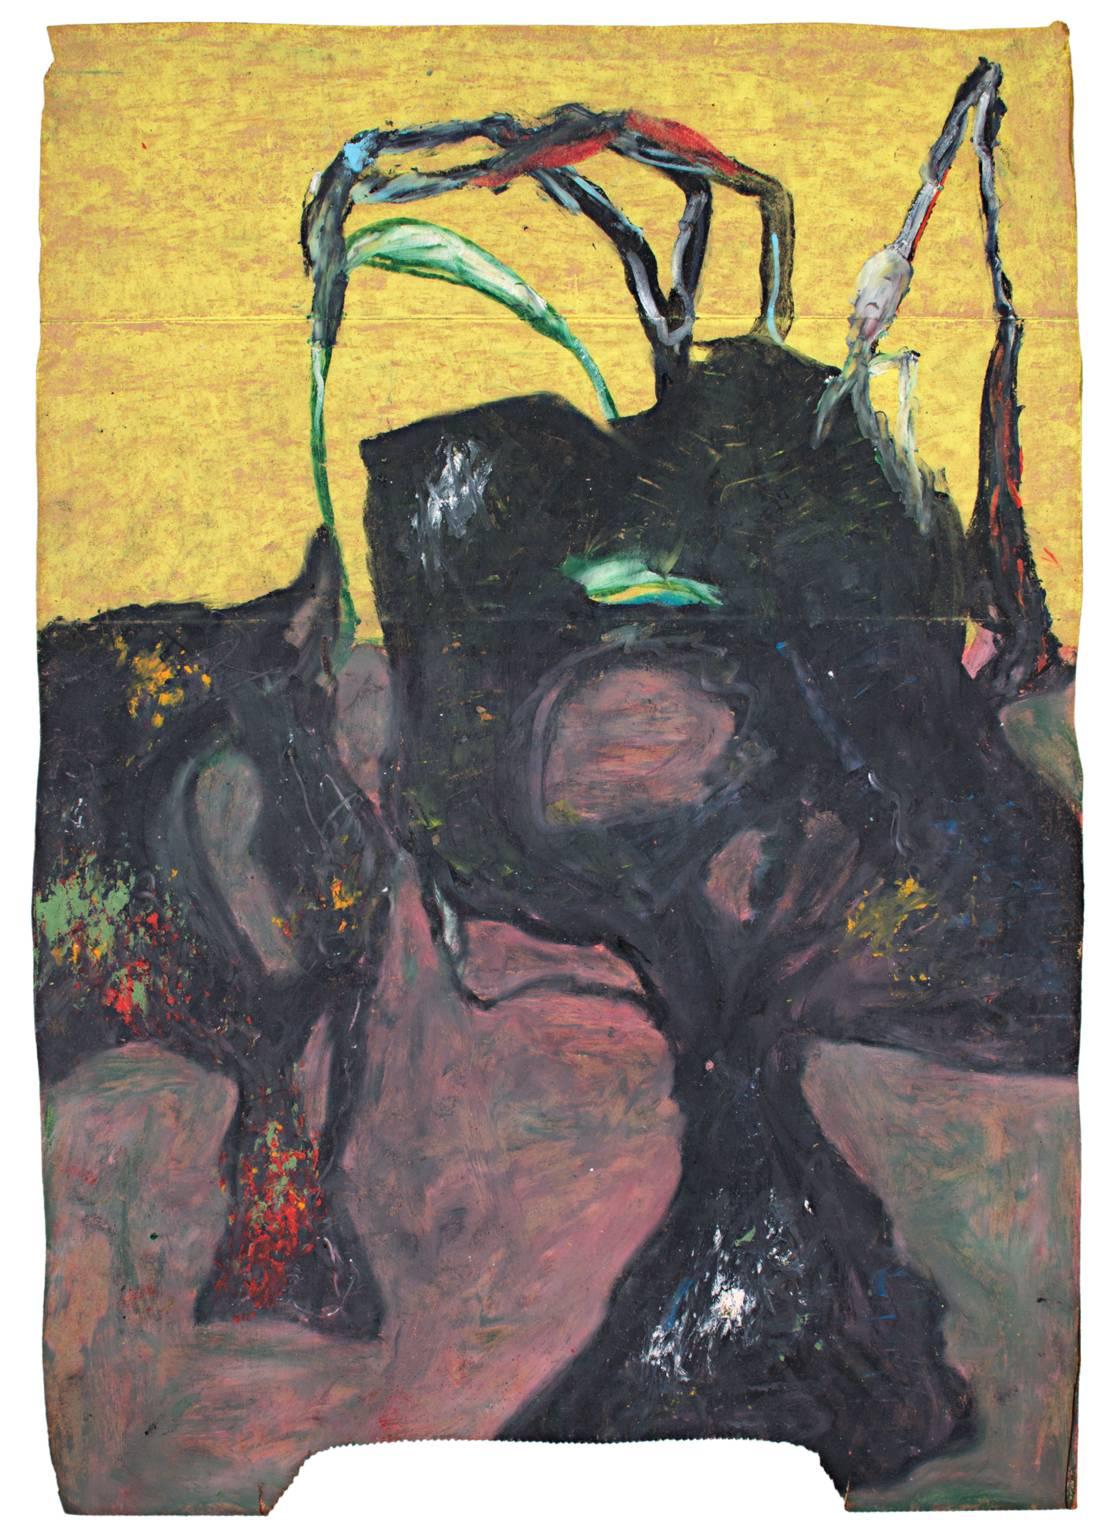 "Hollowsphere" est un dessin original au pastel gras sur un sac en papier de Reginald K. Gee. Il représente des formes abstraites en noir, jaune, vert et rouge. L'artiste a signé l'œuvre au dos. 

16 1/2" x 11 3/4" art

Reginald K. Gee est né à